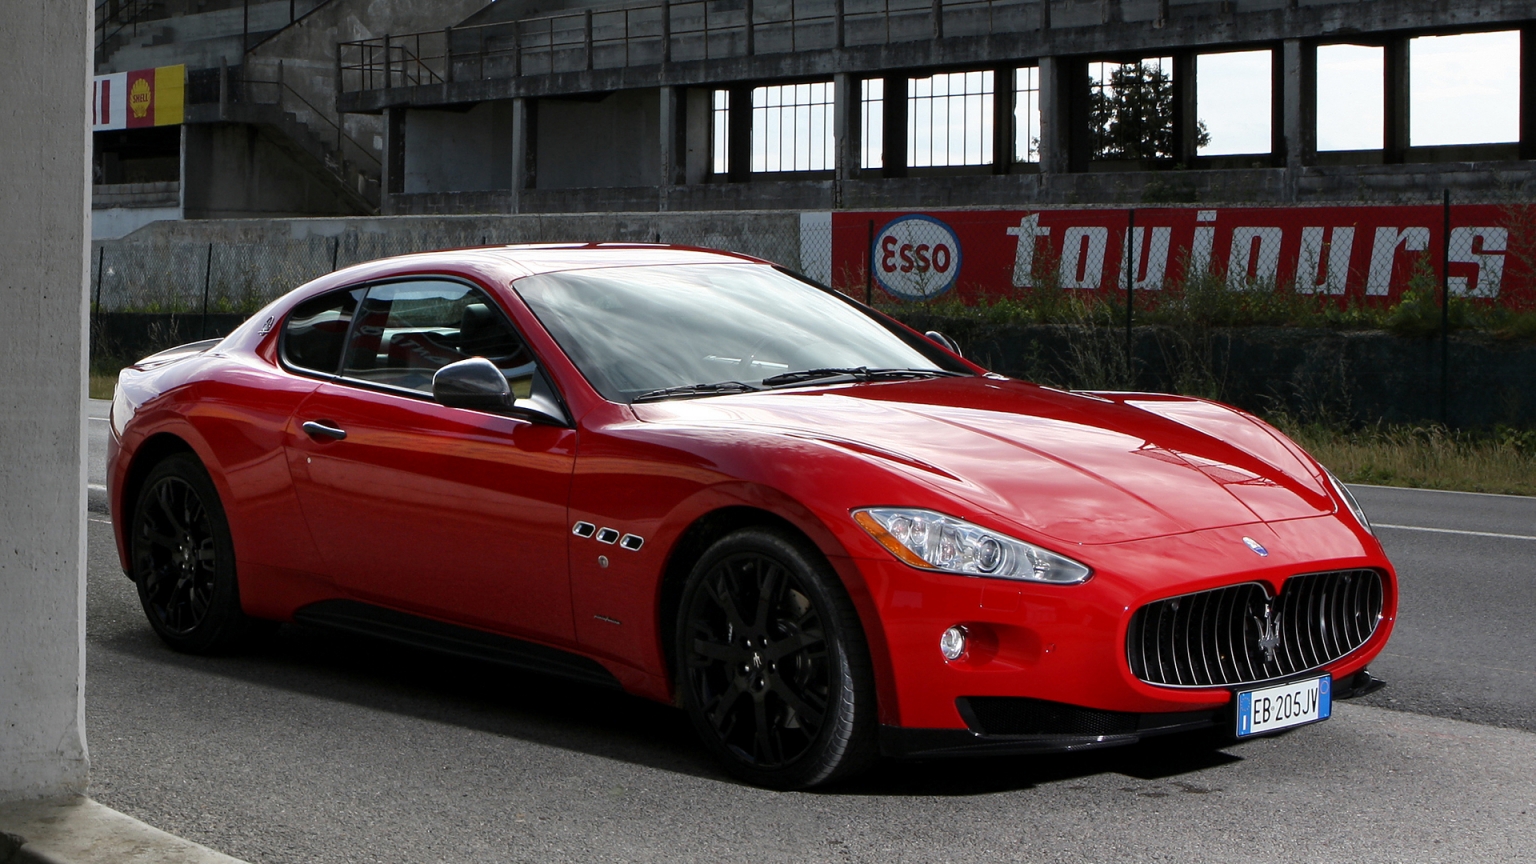 Red Maserati GranTurismo S  for 1536 x 864 HDTV resolution